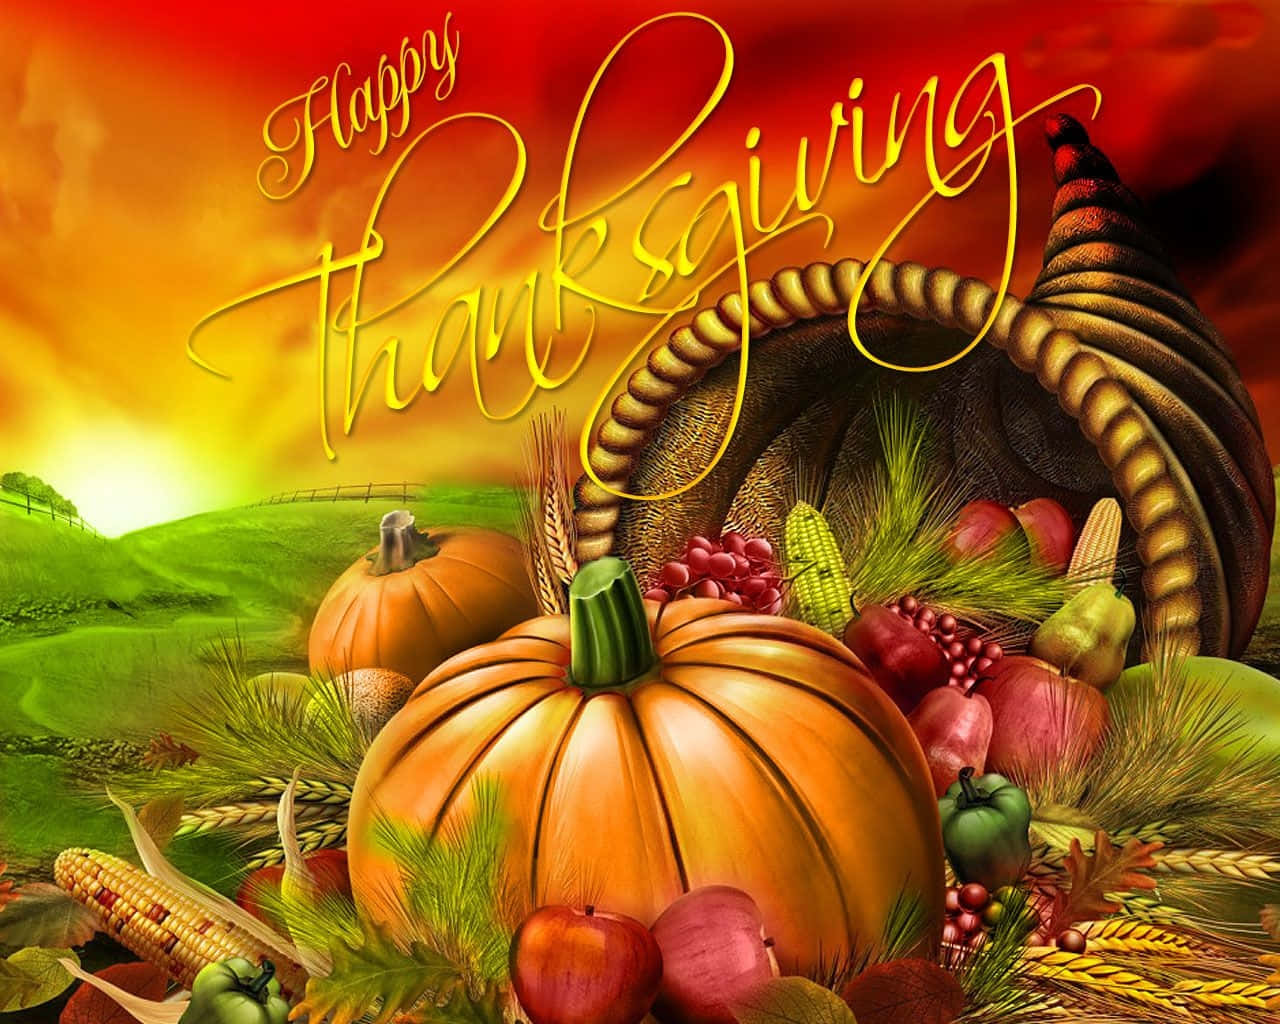 Ønsker dig en Glædelig Thanksgiving fuld af øjeblikke af glæde og taknemmelighed Wallpaper